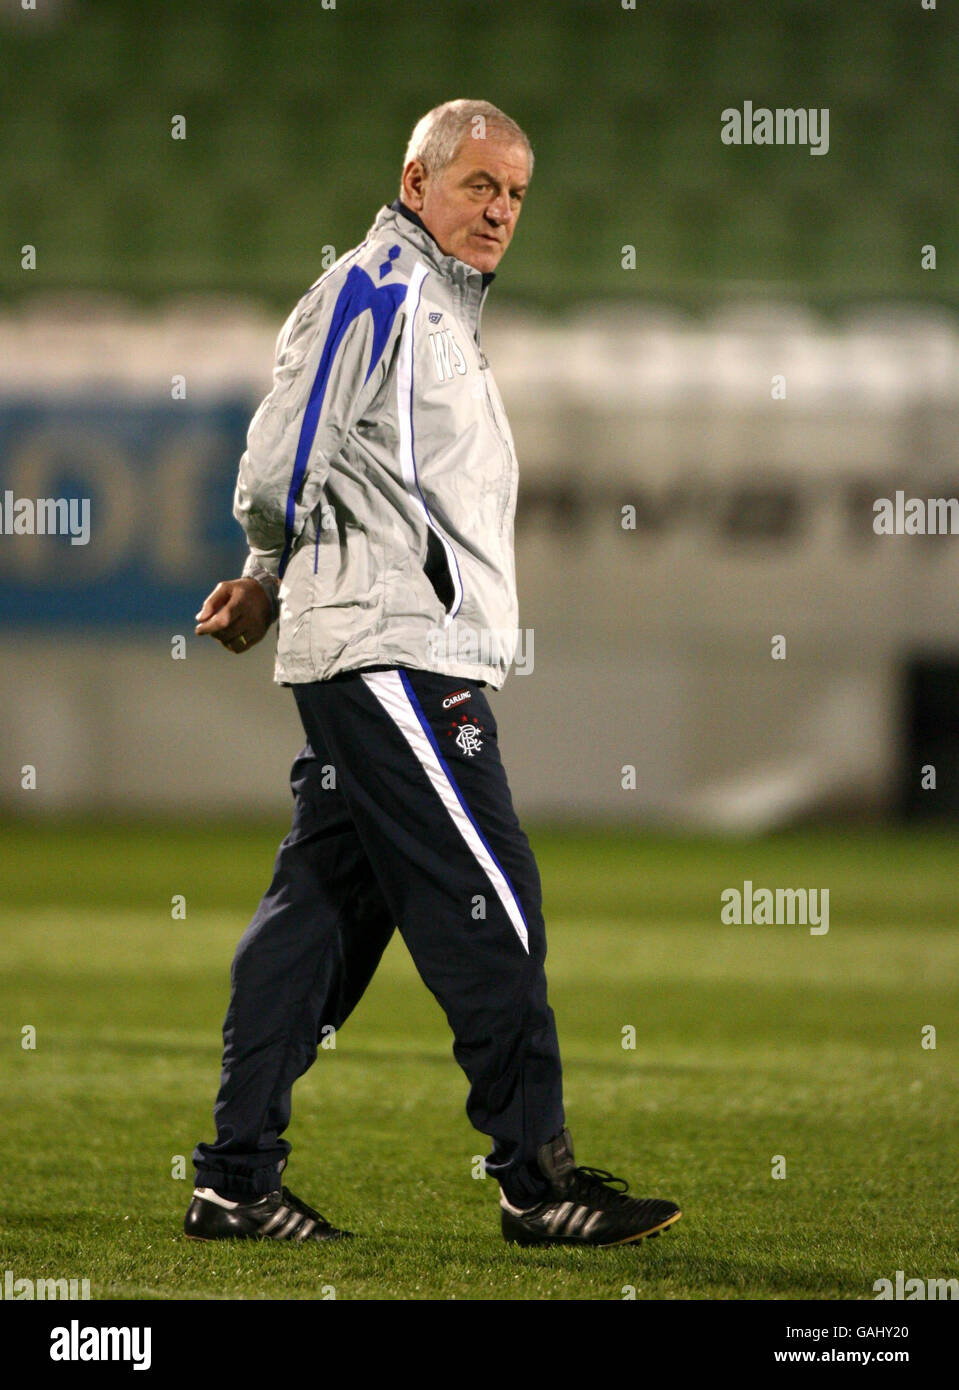 Walter Smith, responsable des Rangers, lors d'une séance d'entraînement au stade Apostolos Nikolaidis, Athènes, Grèce. Banque D'Images